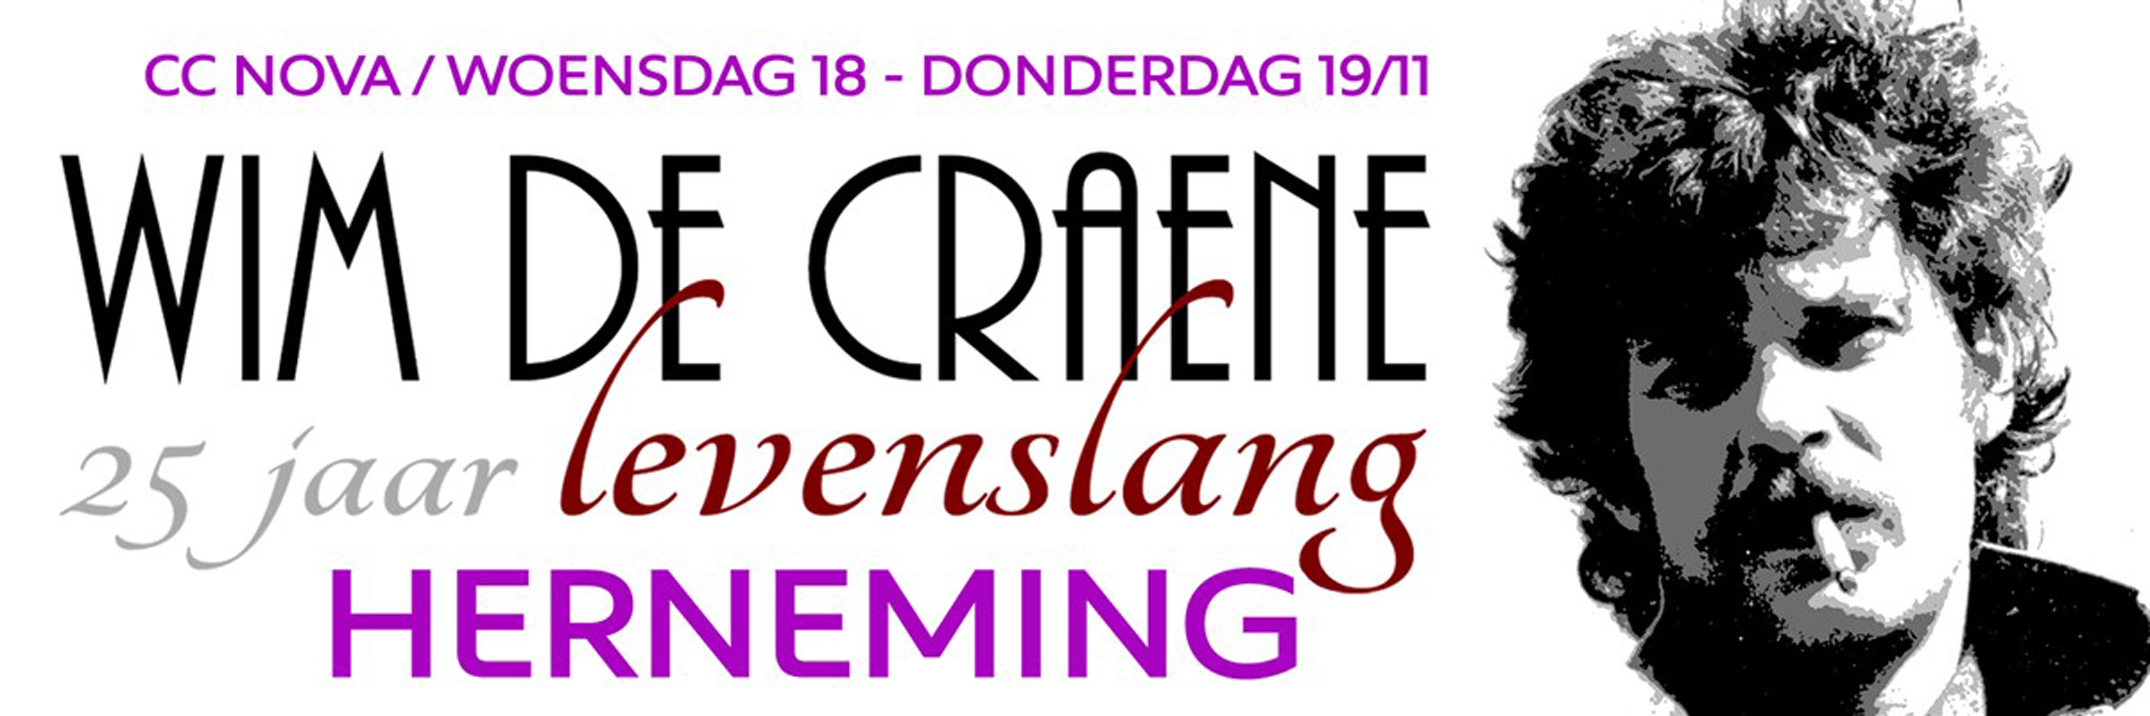 2015 Concert Wim De Craene 25 jaar Levenslang